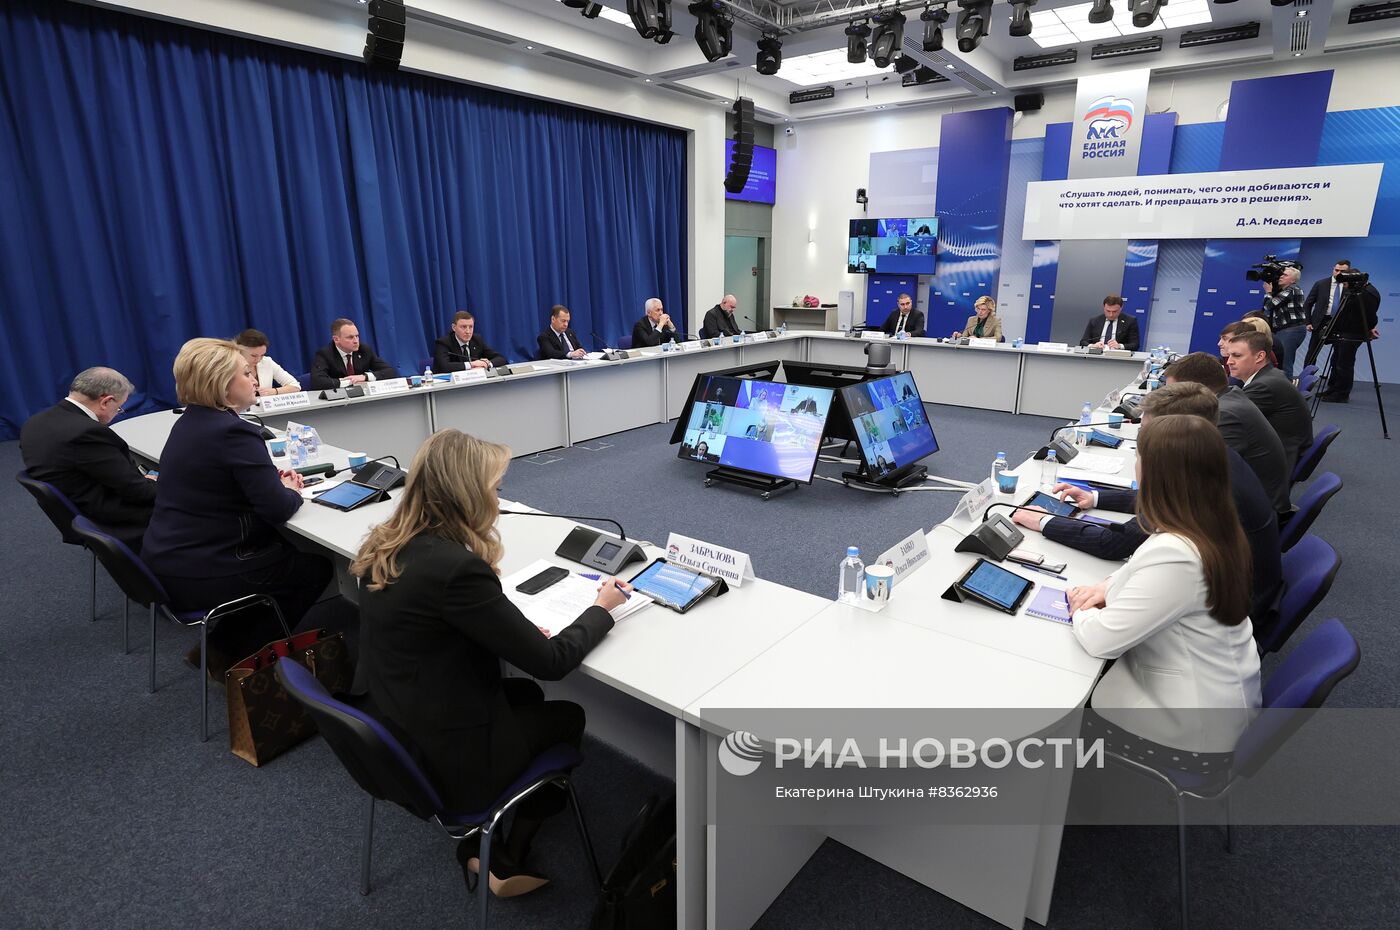 Заседание программной комиссии "Единой России" под руководством председателя партии Д. Медведева